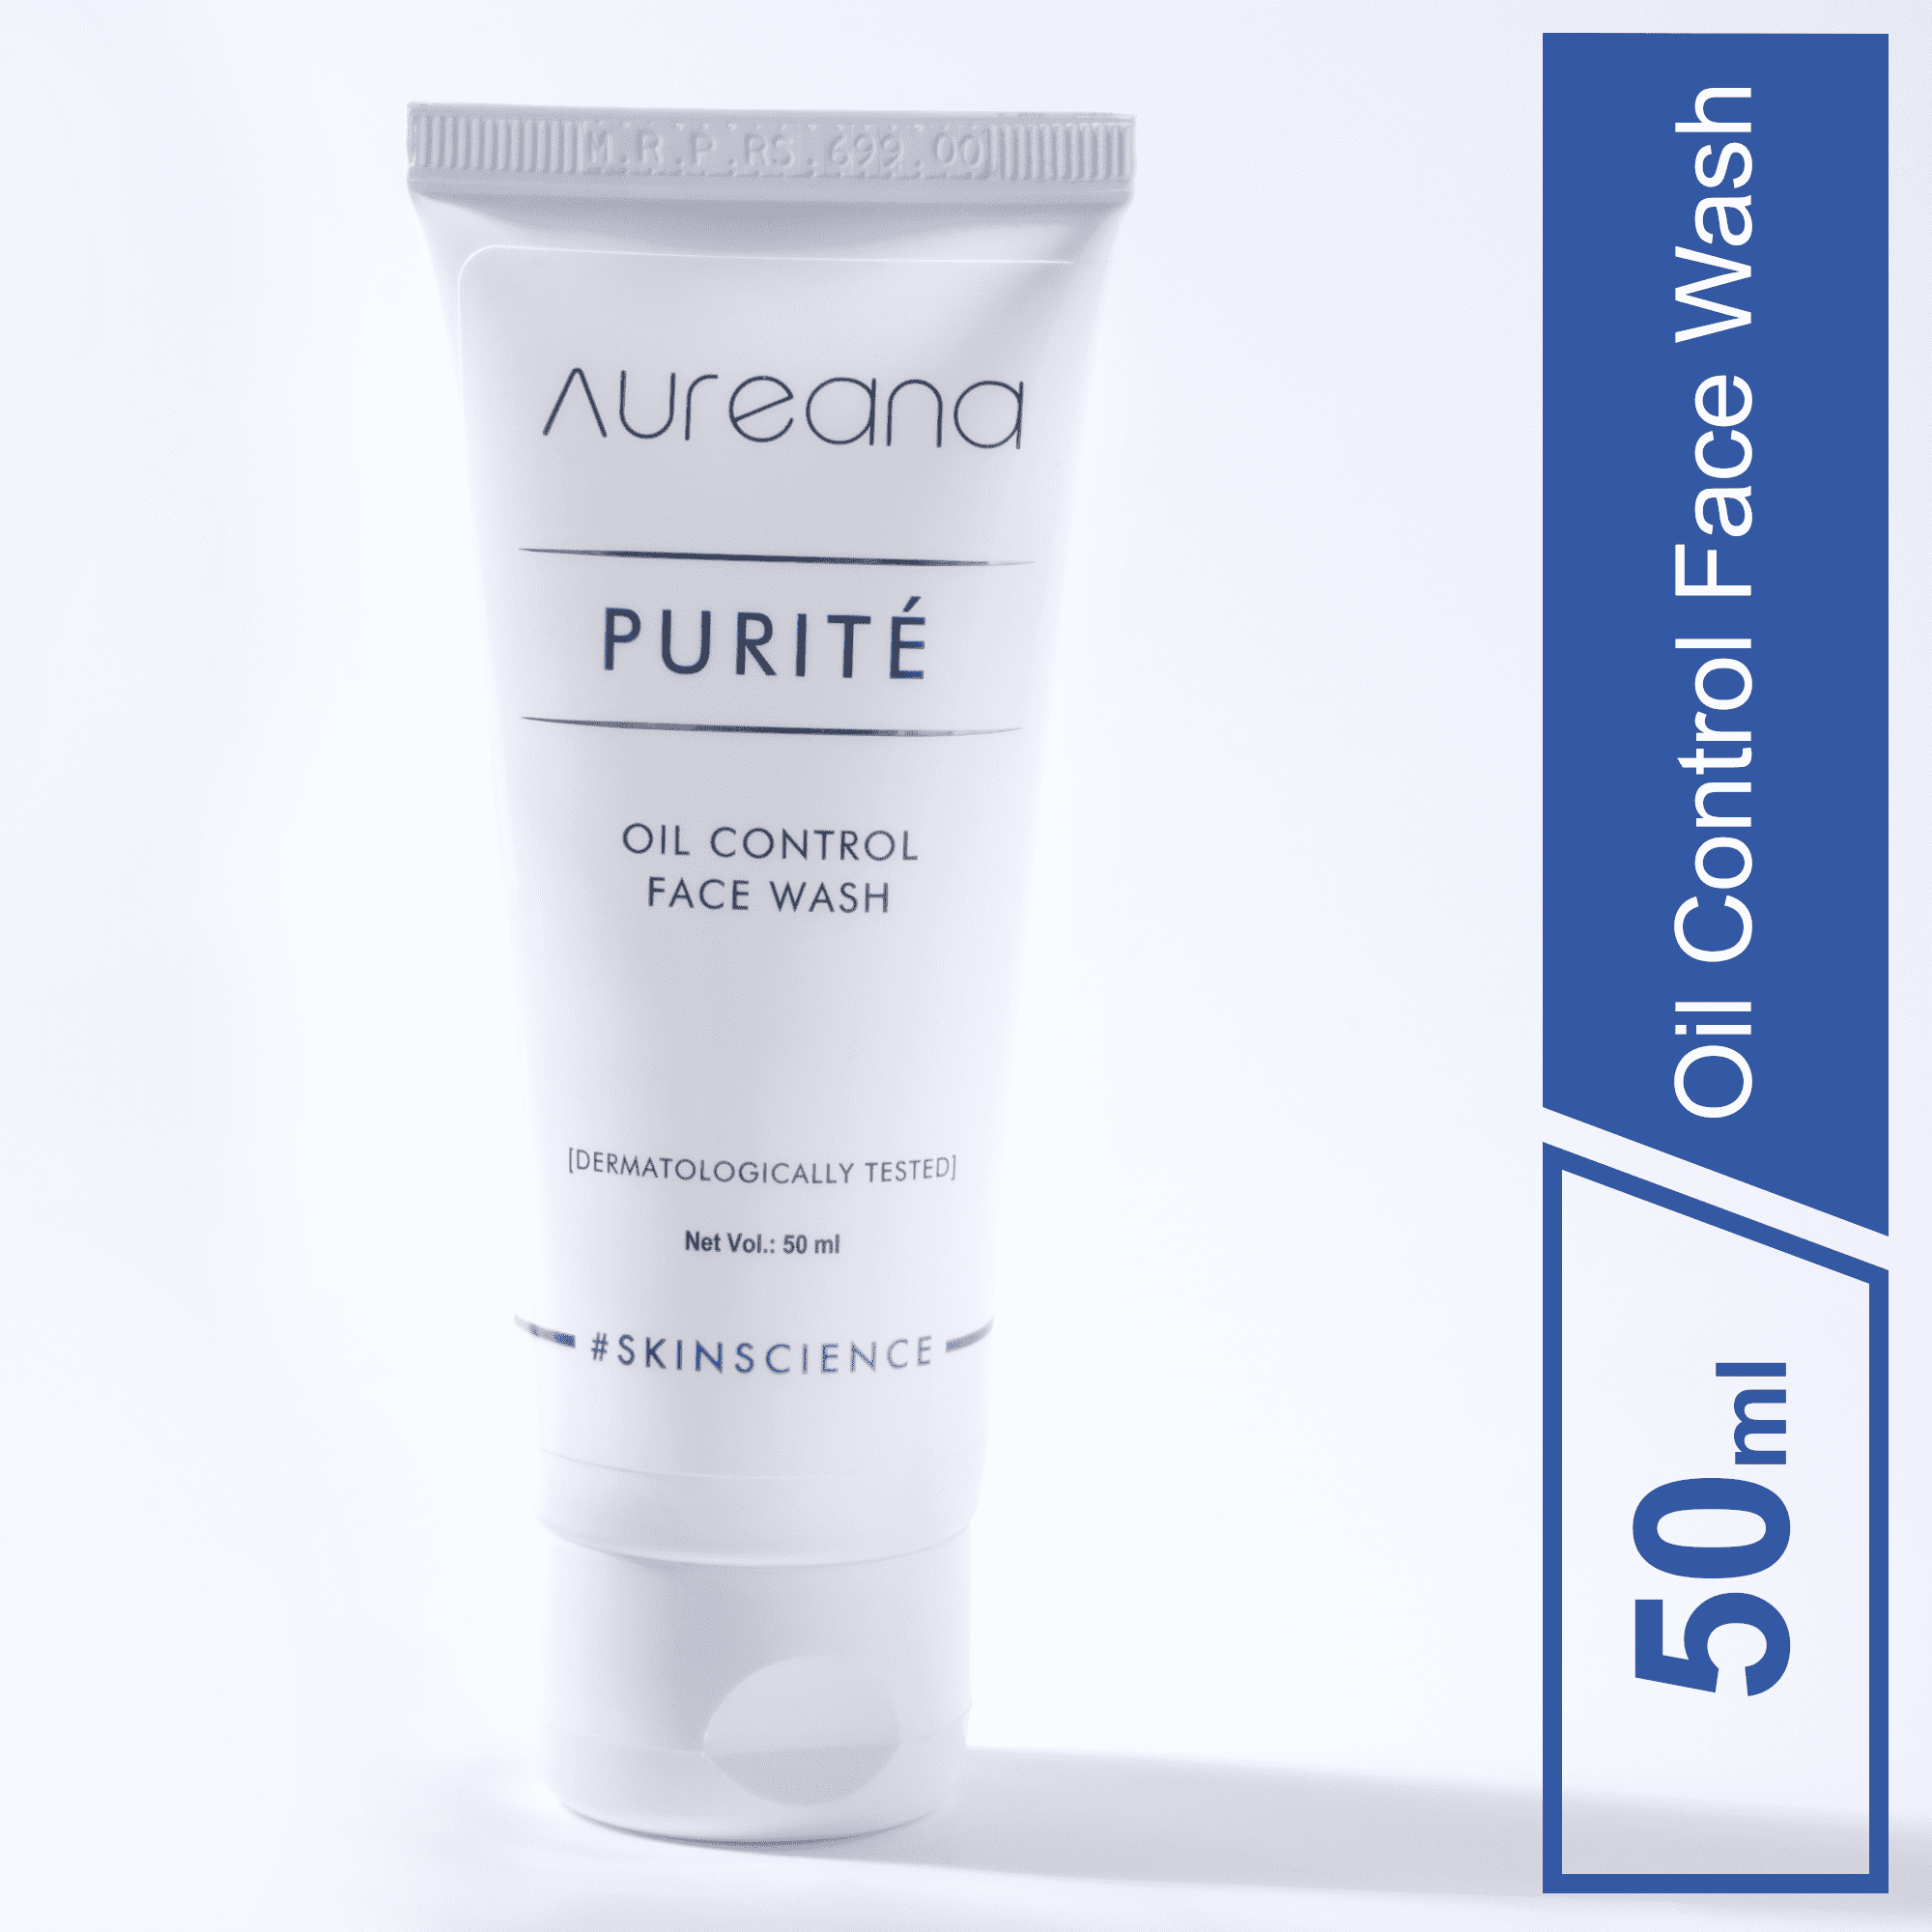 Aureana Purité Oil Control Face Wash - 50 ml